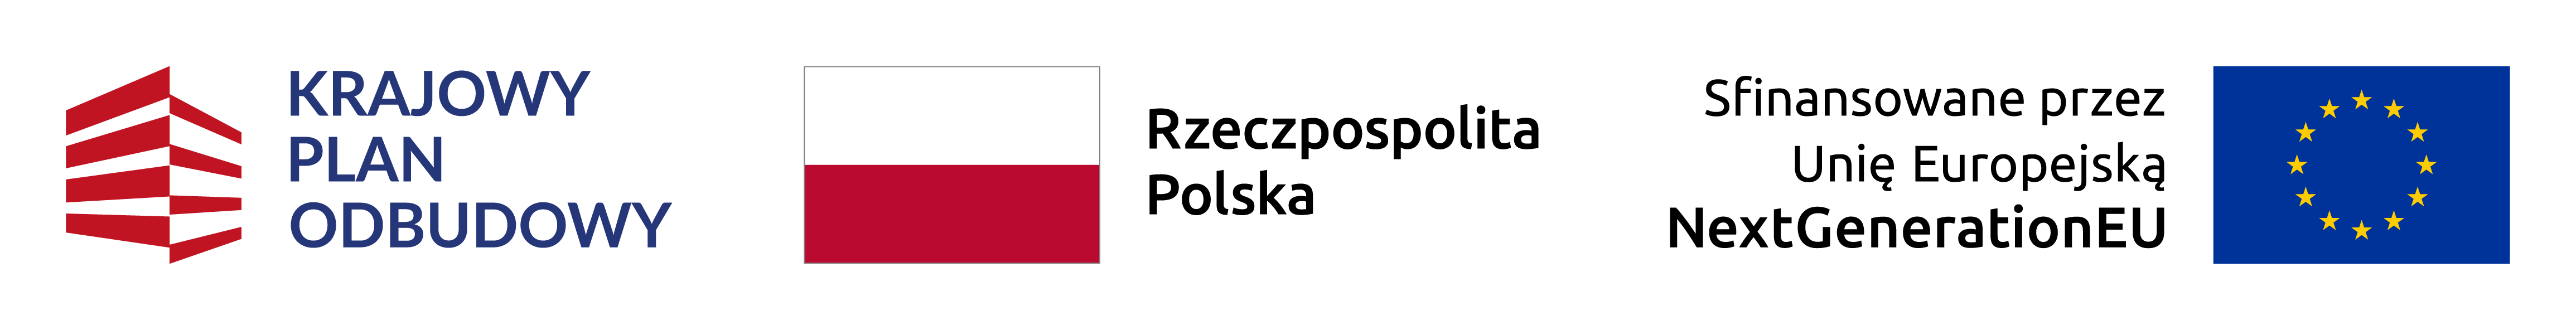 Od lewej 1. logo KPO, dwa wielokąty w paski czerwono białe, niebieski napis po prawej stronie Krajowy Plan Odbudowy, 2. Logo biało czerwona flaga Polski, po prawej czarny napis Rzeczpospolita Polska, 3. logo czarny napis Sfinansowane przez Unię Europejską Next Generation EU, po prawej flaga Unii Europejskiej na niebieskim tle 12 żółtych gwiazdek ułożonych w kształcie okręgu.